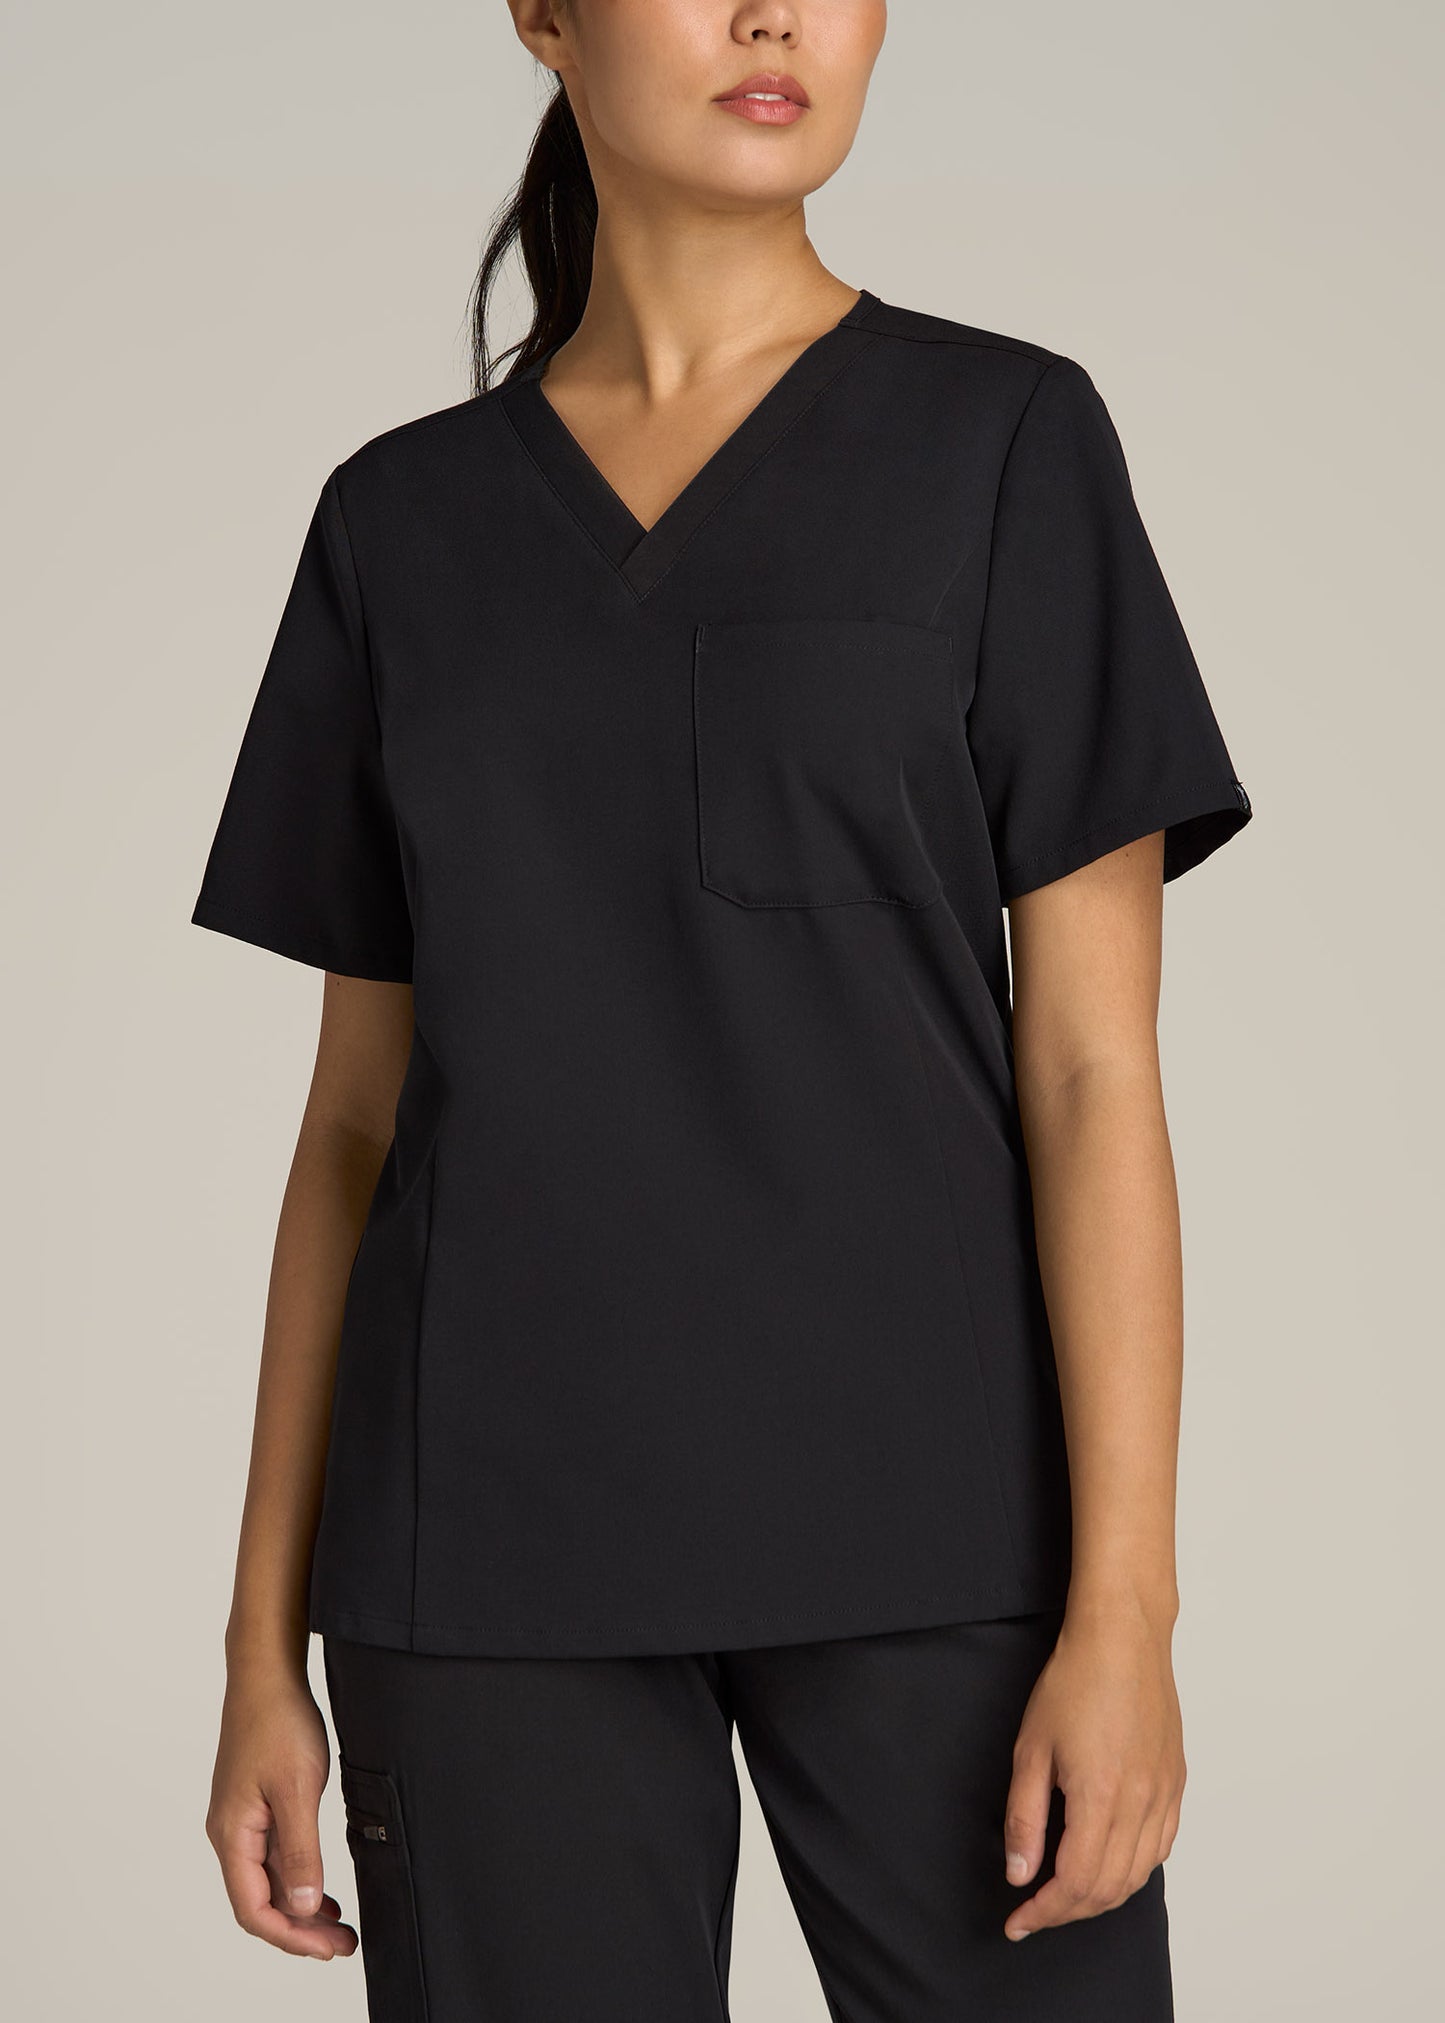 Short Sleeve V-Neck Scrub Top for Tall Women in Black